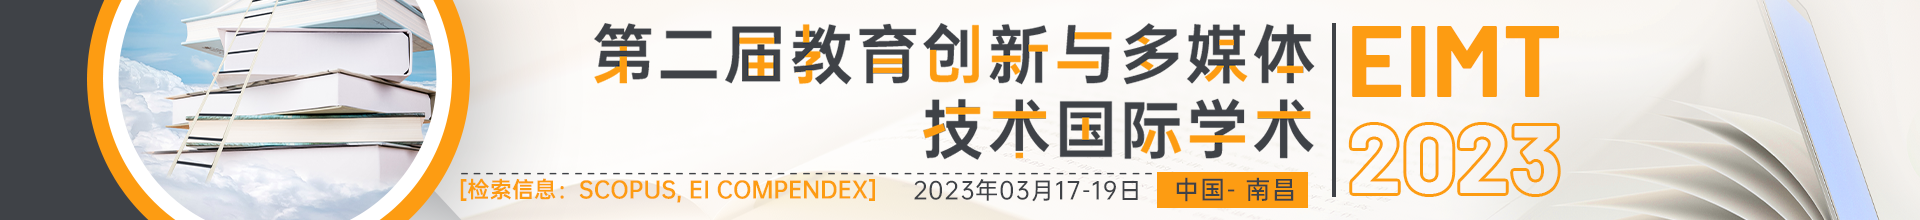 03月南昌- EIMT 2023会议云banner-20220914.psd.png